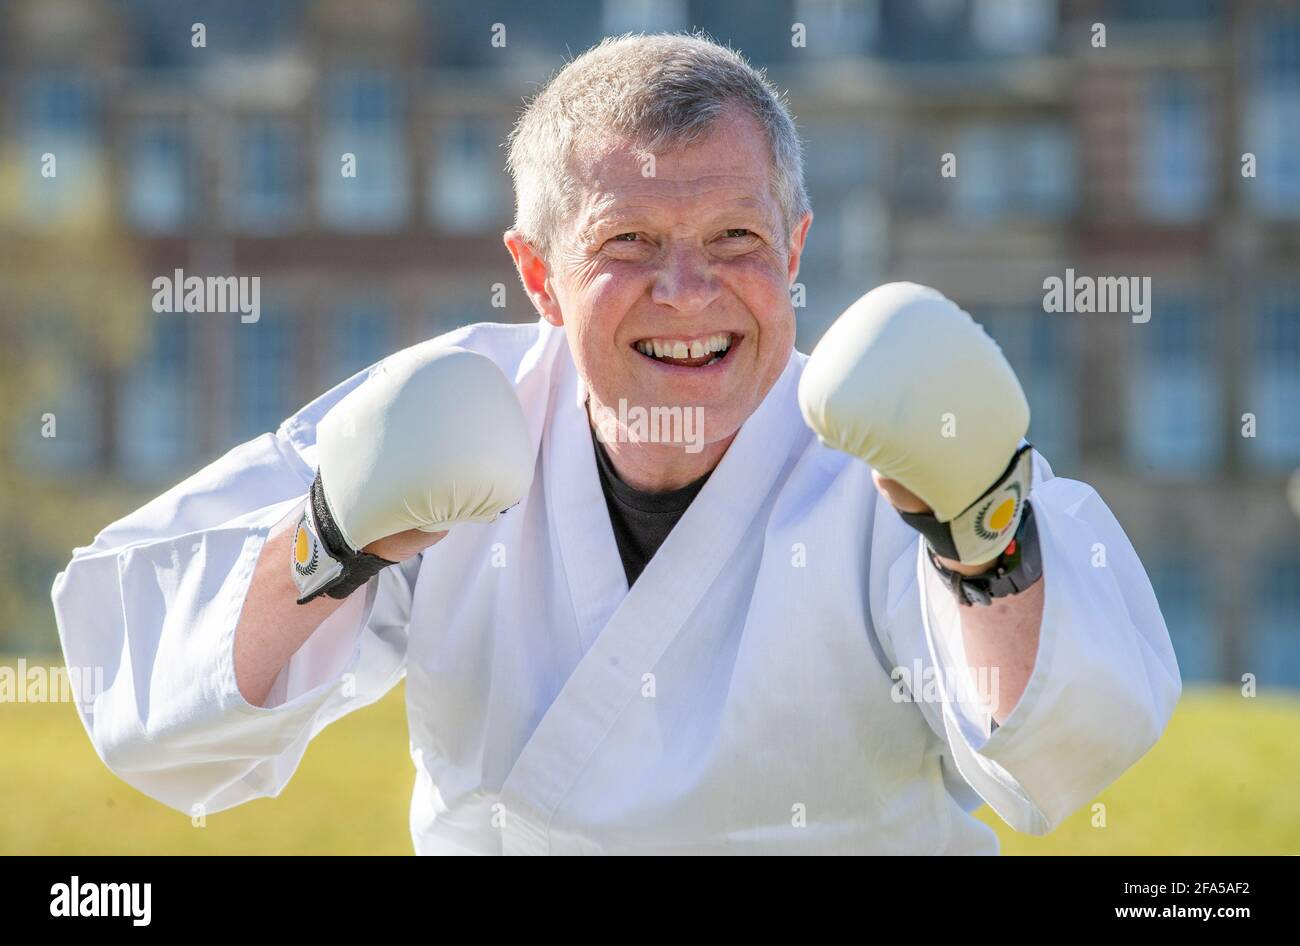 Il leader liberaldemocratico scozzese Willie Rennie partecipa a una lezione di karate al Meadows di Edimburgo, durante la campagna elettorale per le elezioni parlamentari scozzesi. Data immagine: Venerdì 23 aprile 2021. Foto Stock